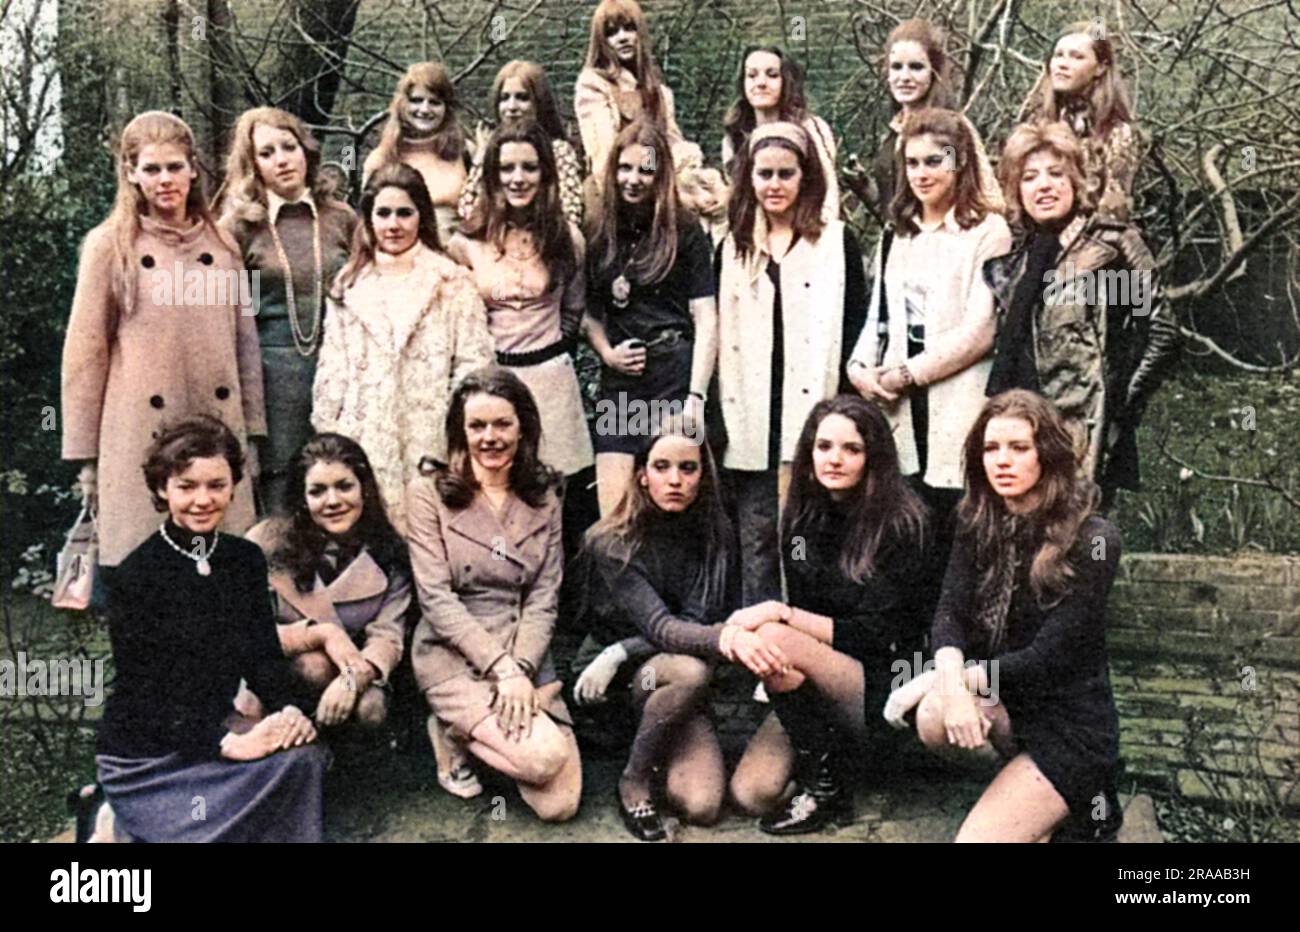 Eine Gruppe von zwanzig Mädchen, die aus 200 hoffnungsvollen Personen ausgewählt wurden, um an der Eröffnungsveranstaltung der Londoner Saison teilzunehmen, der Berkeley Dress Show (früher Berkeley Debutante Dress Show), die im April 1970 stattfindet. Datum: 1970 Stockfoto